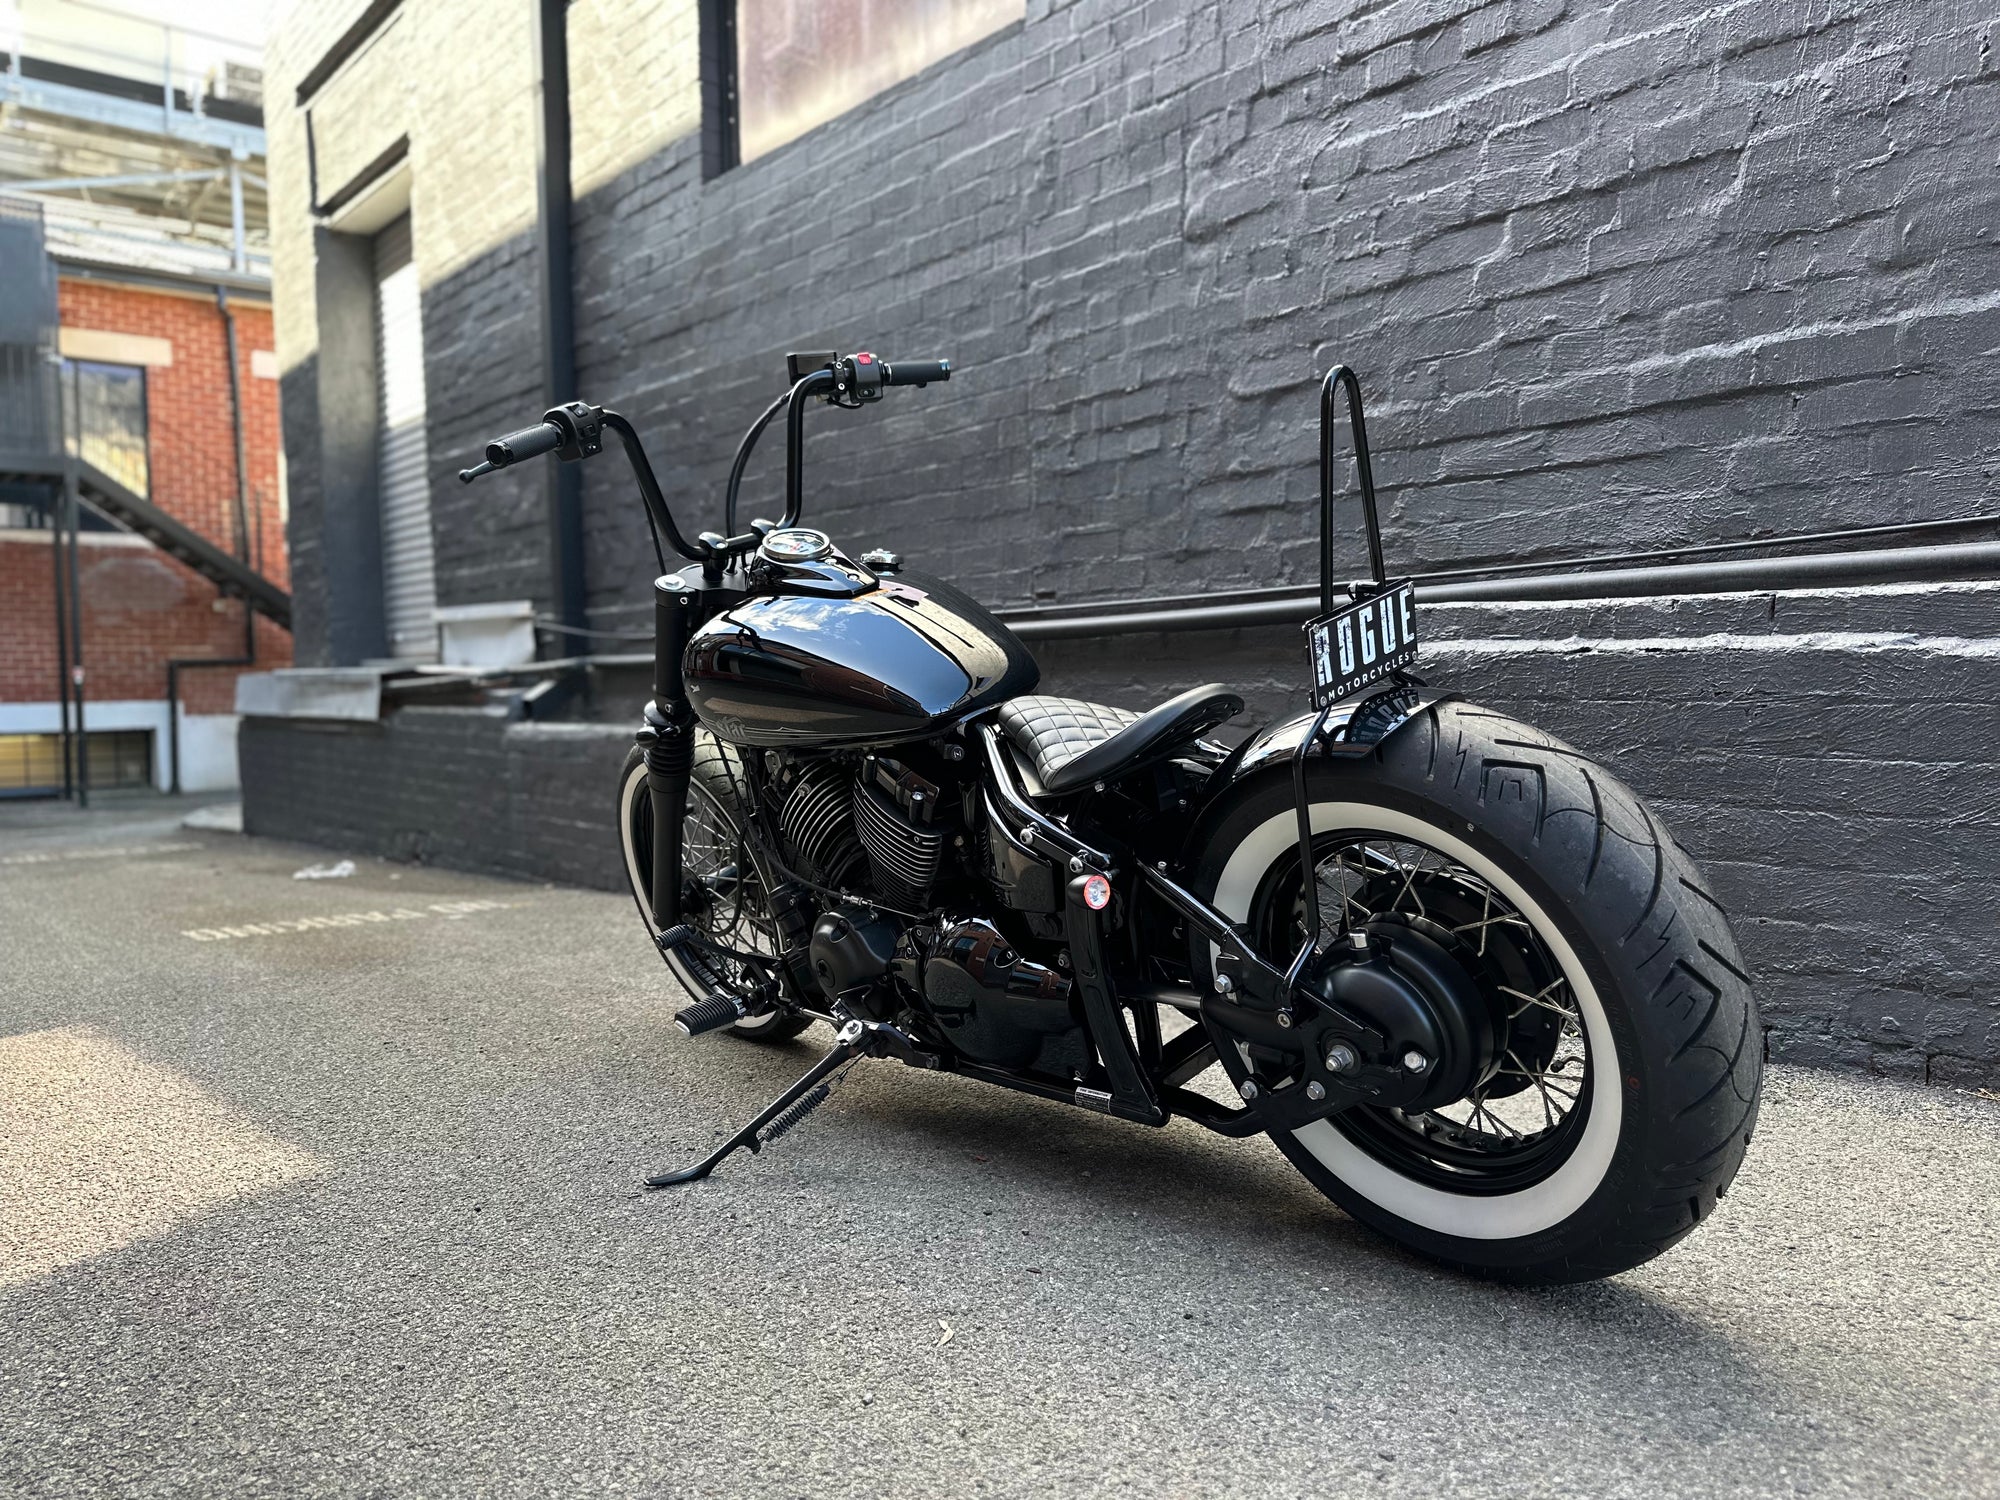 Yamaha v-star XVS 650 sissy bar - Rogue Motorcycles